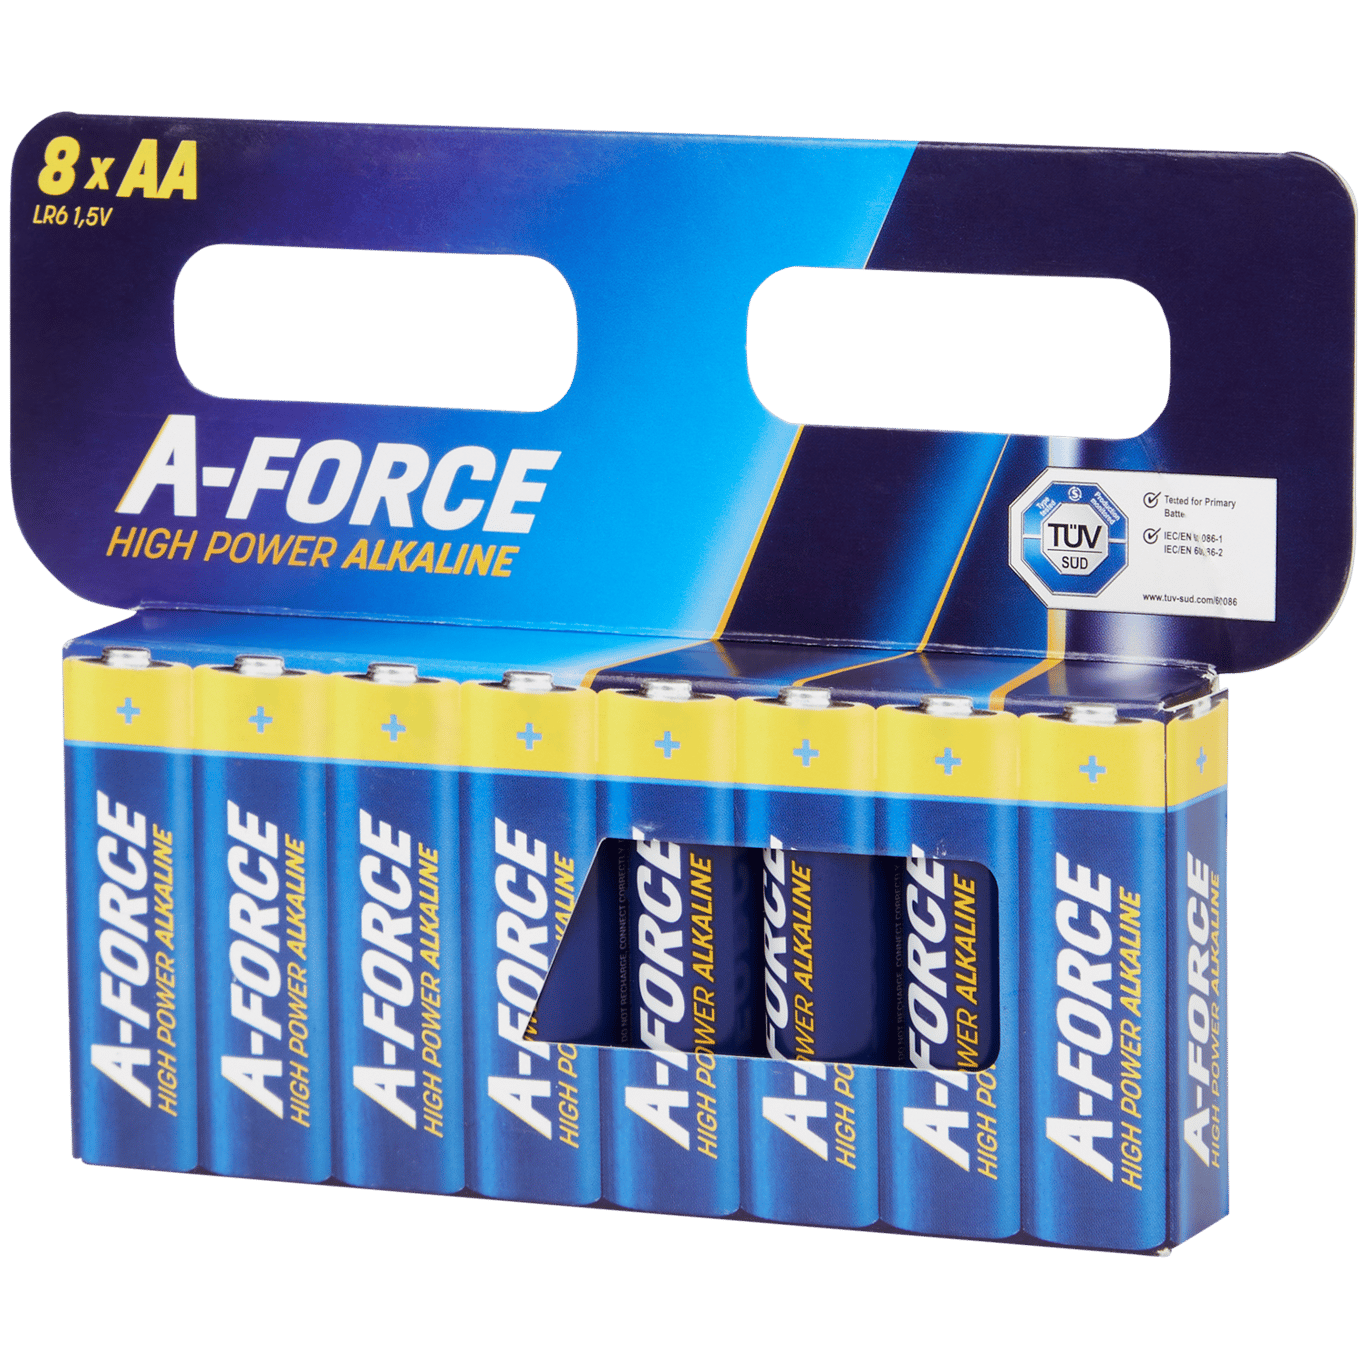 bijtend elke keer Helaas A-Force knoopcelbatterijen | Action.com